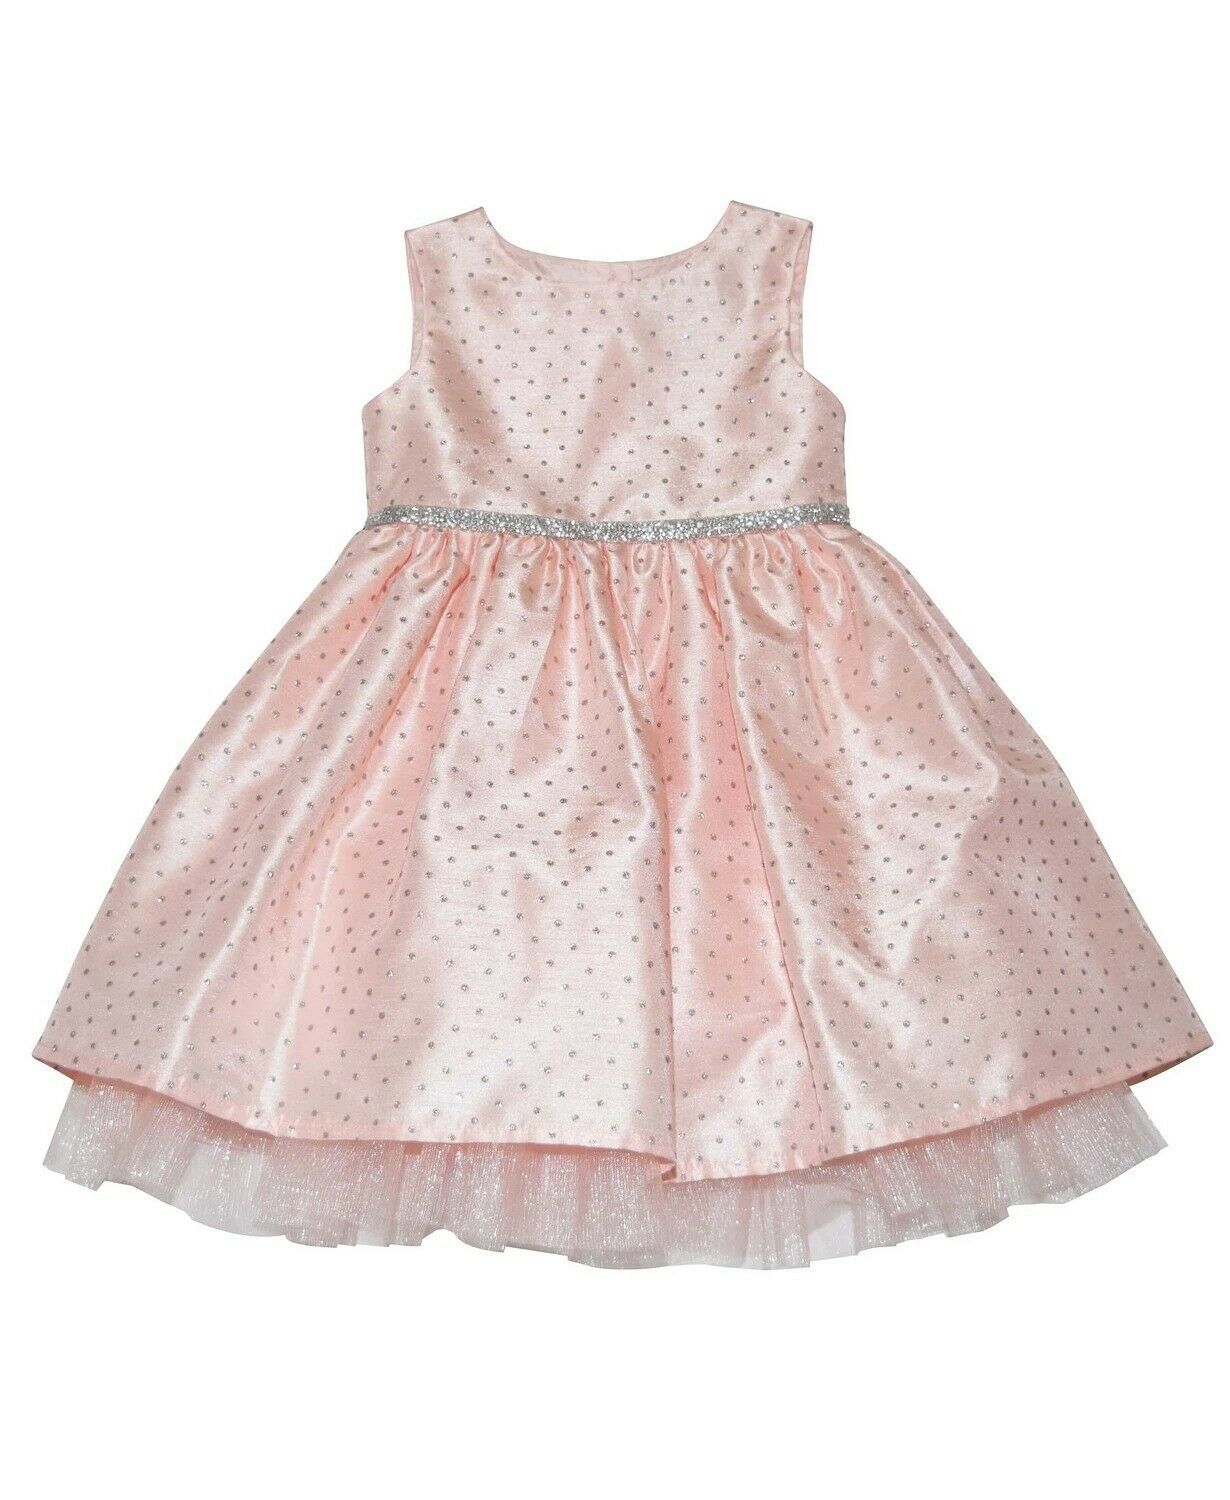 Blueberi Boulevard BLUSH Toddler Girls' Silver Glitter Dress, US 4T